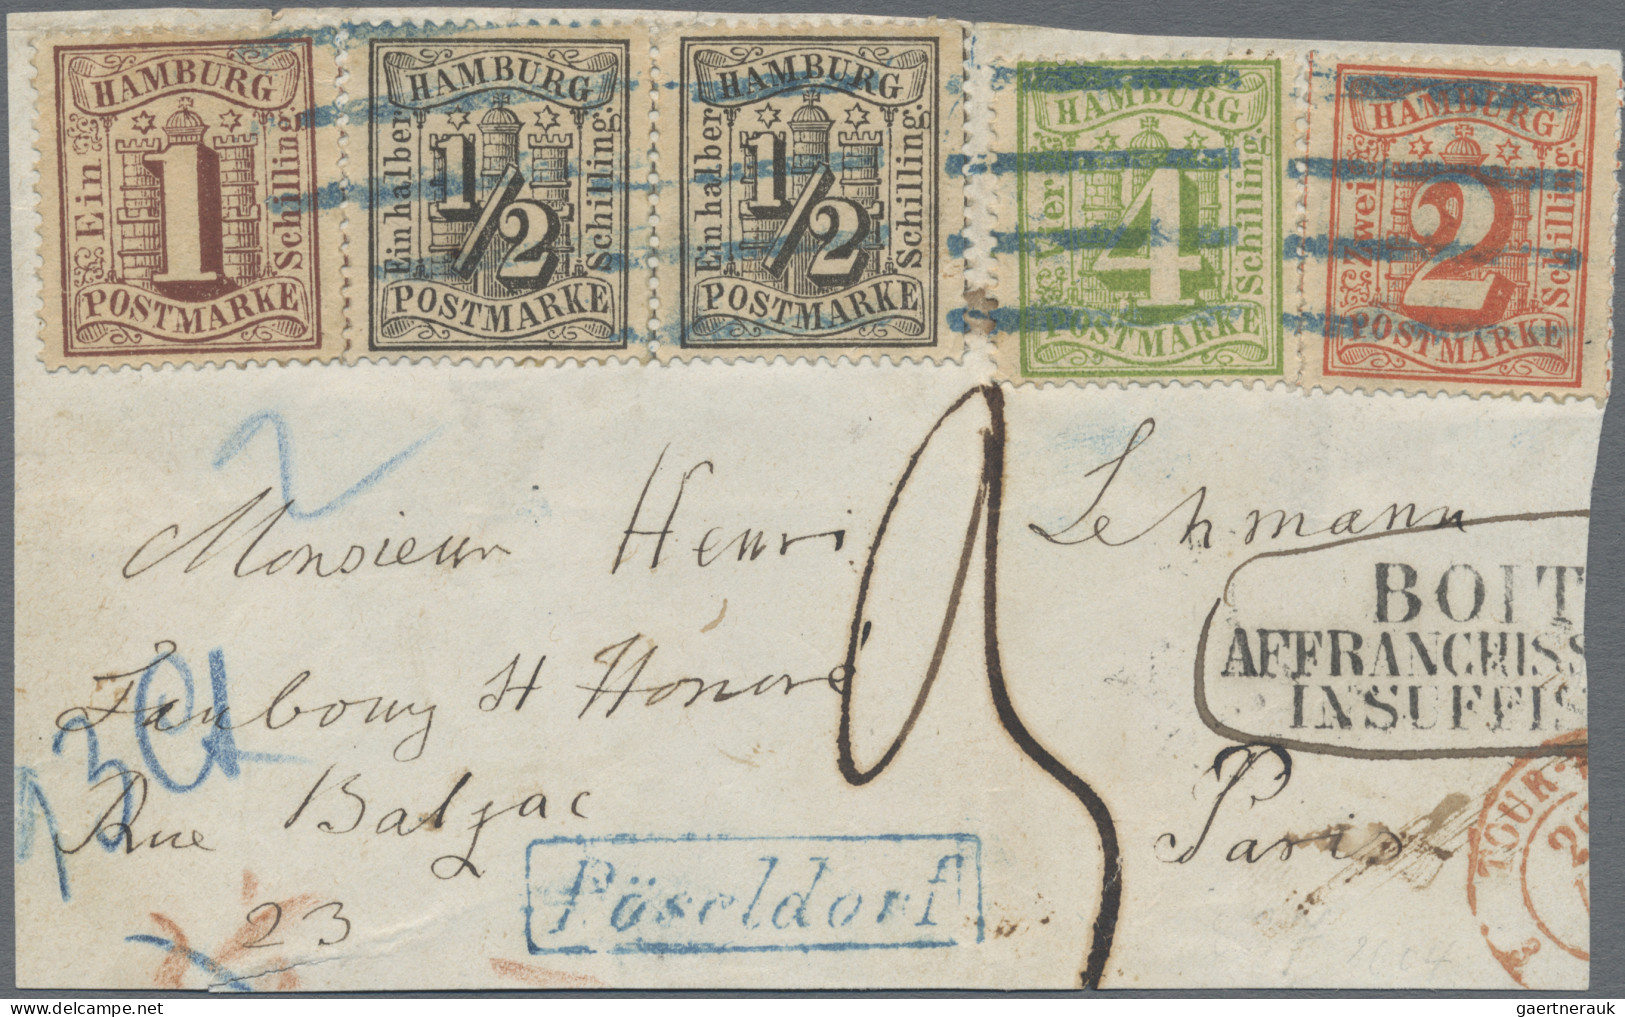 Hamburg - Marken und Briefe: 1859/1866, 19 herausragende Einzelstücke in erstkla